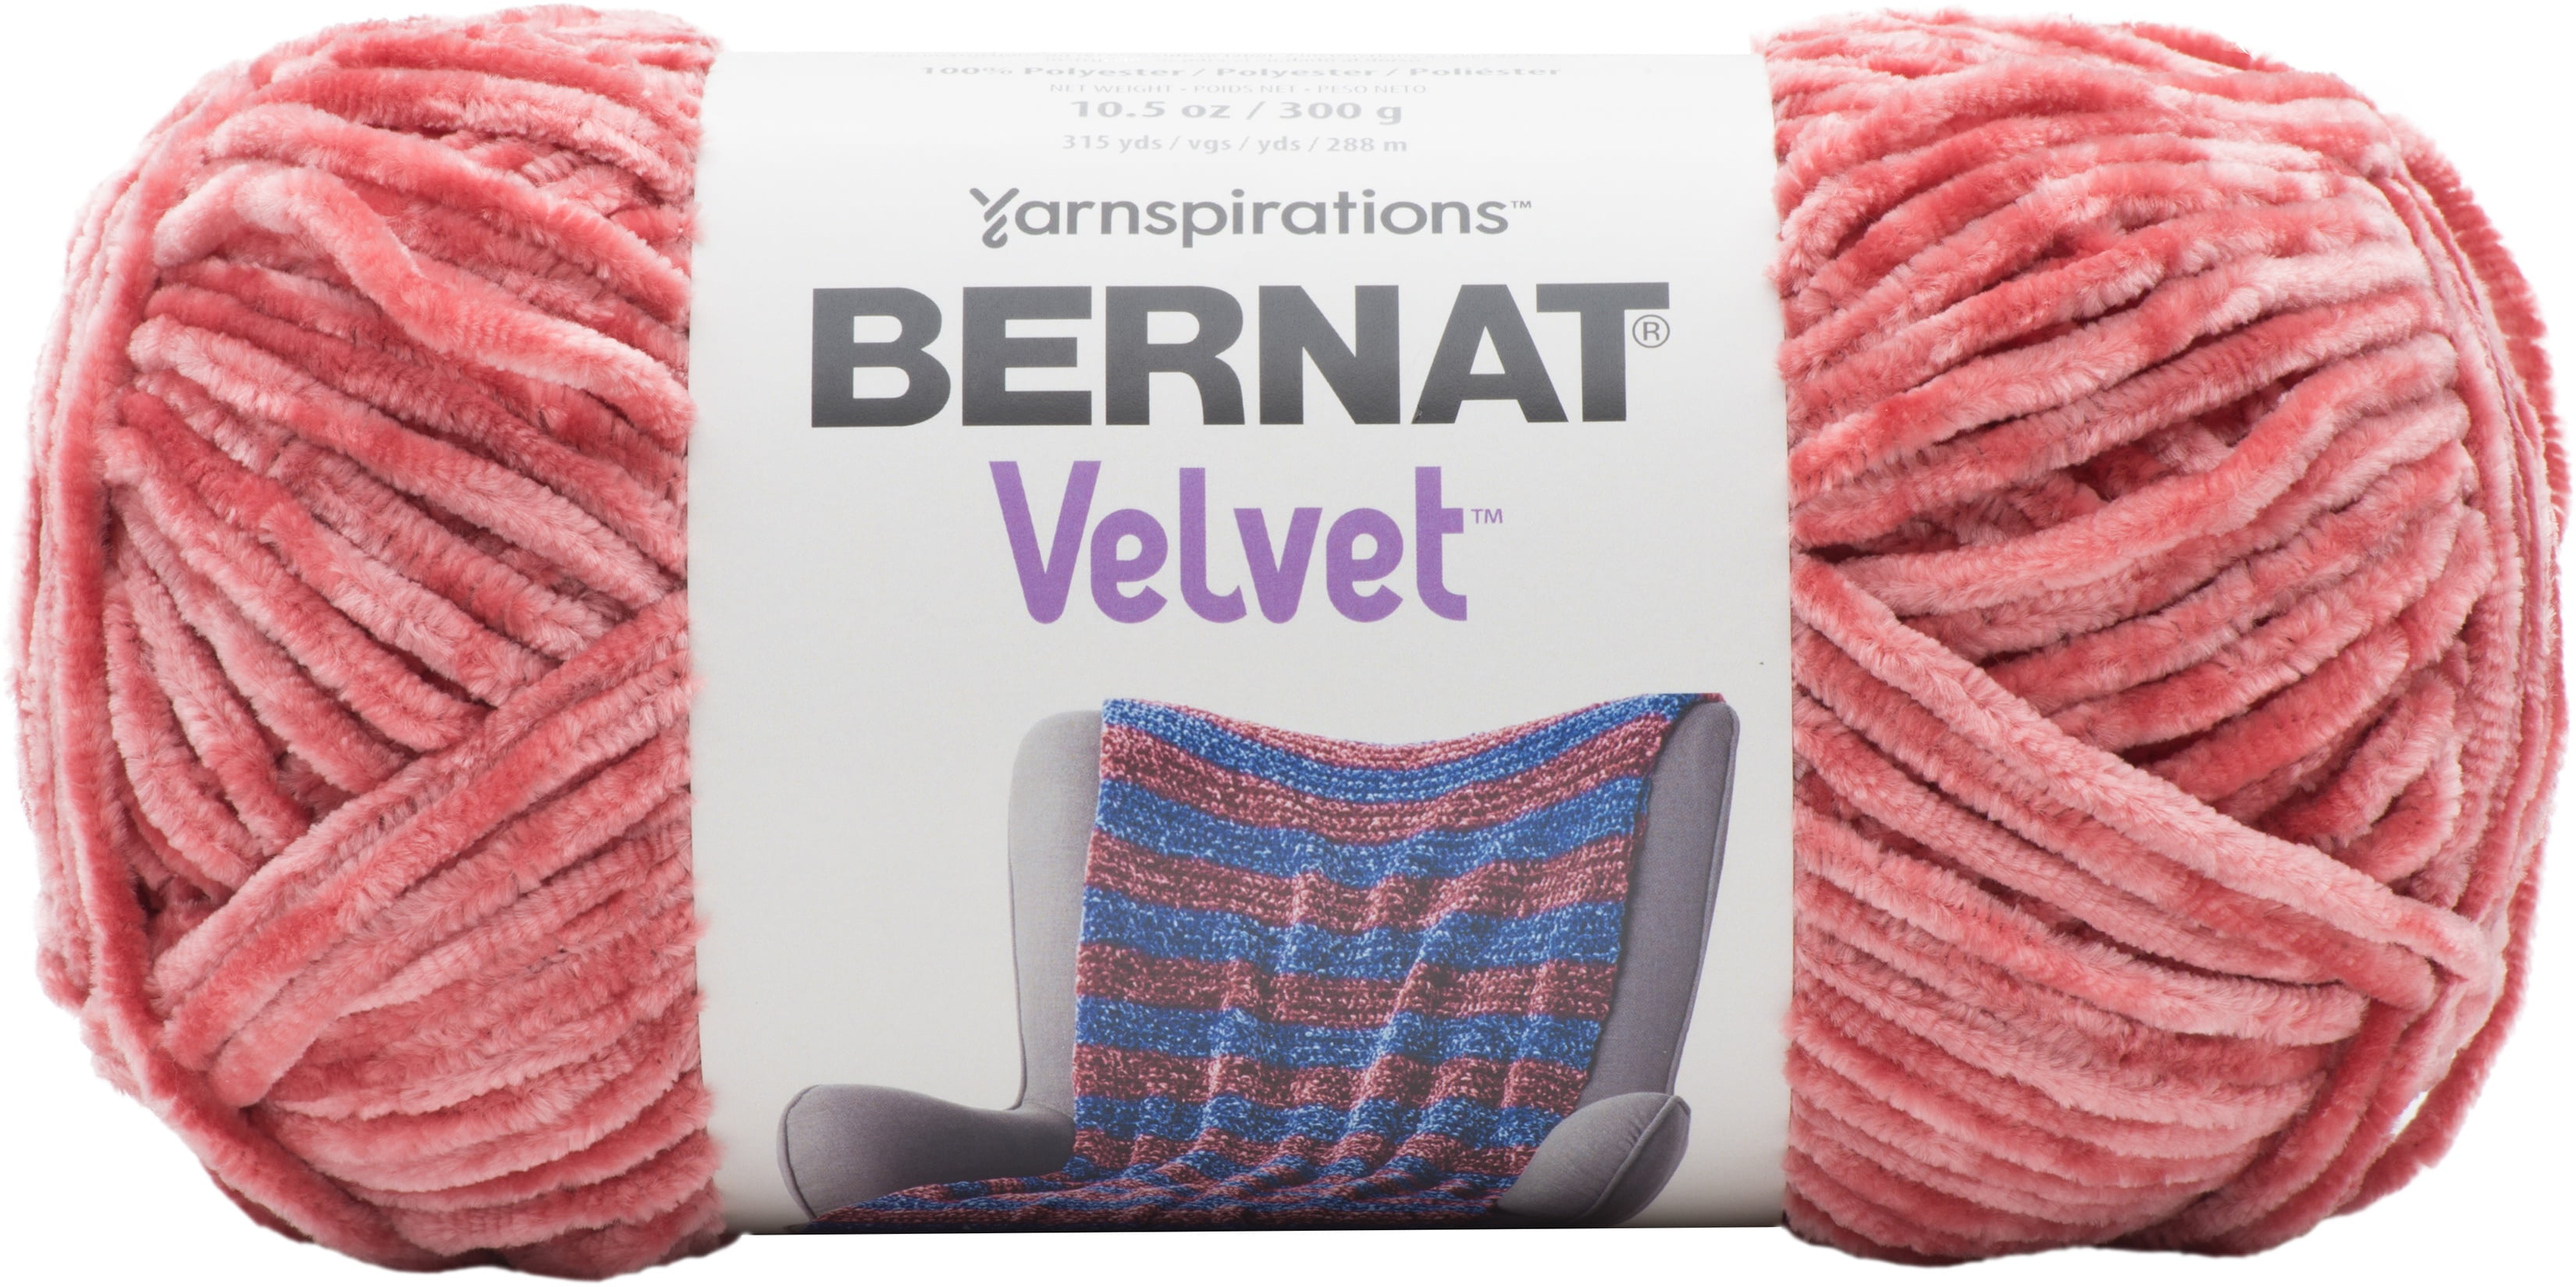 Bernat Velvet Yarn - Terracotta Rose